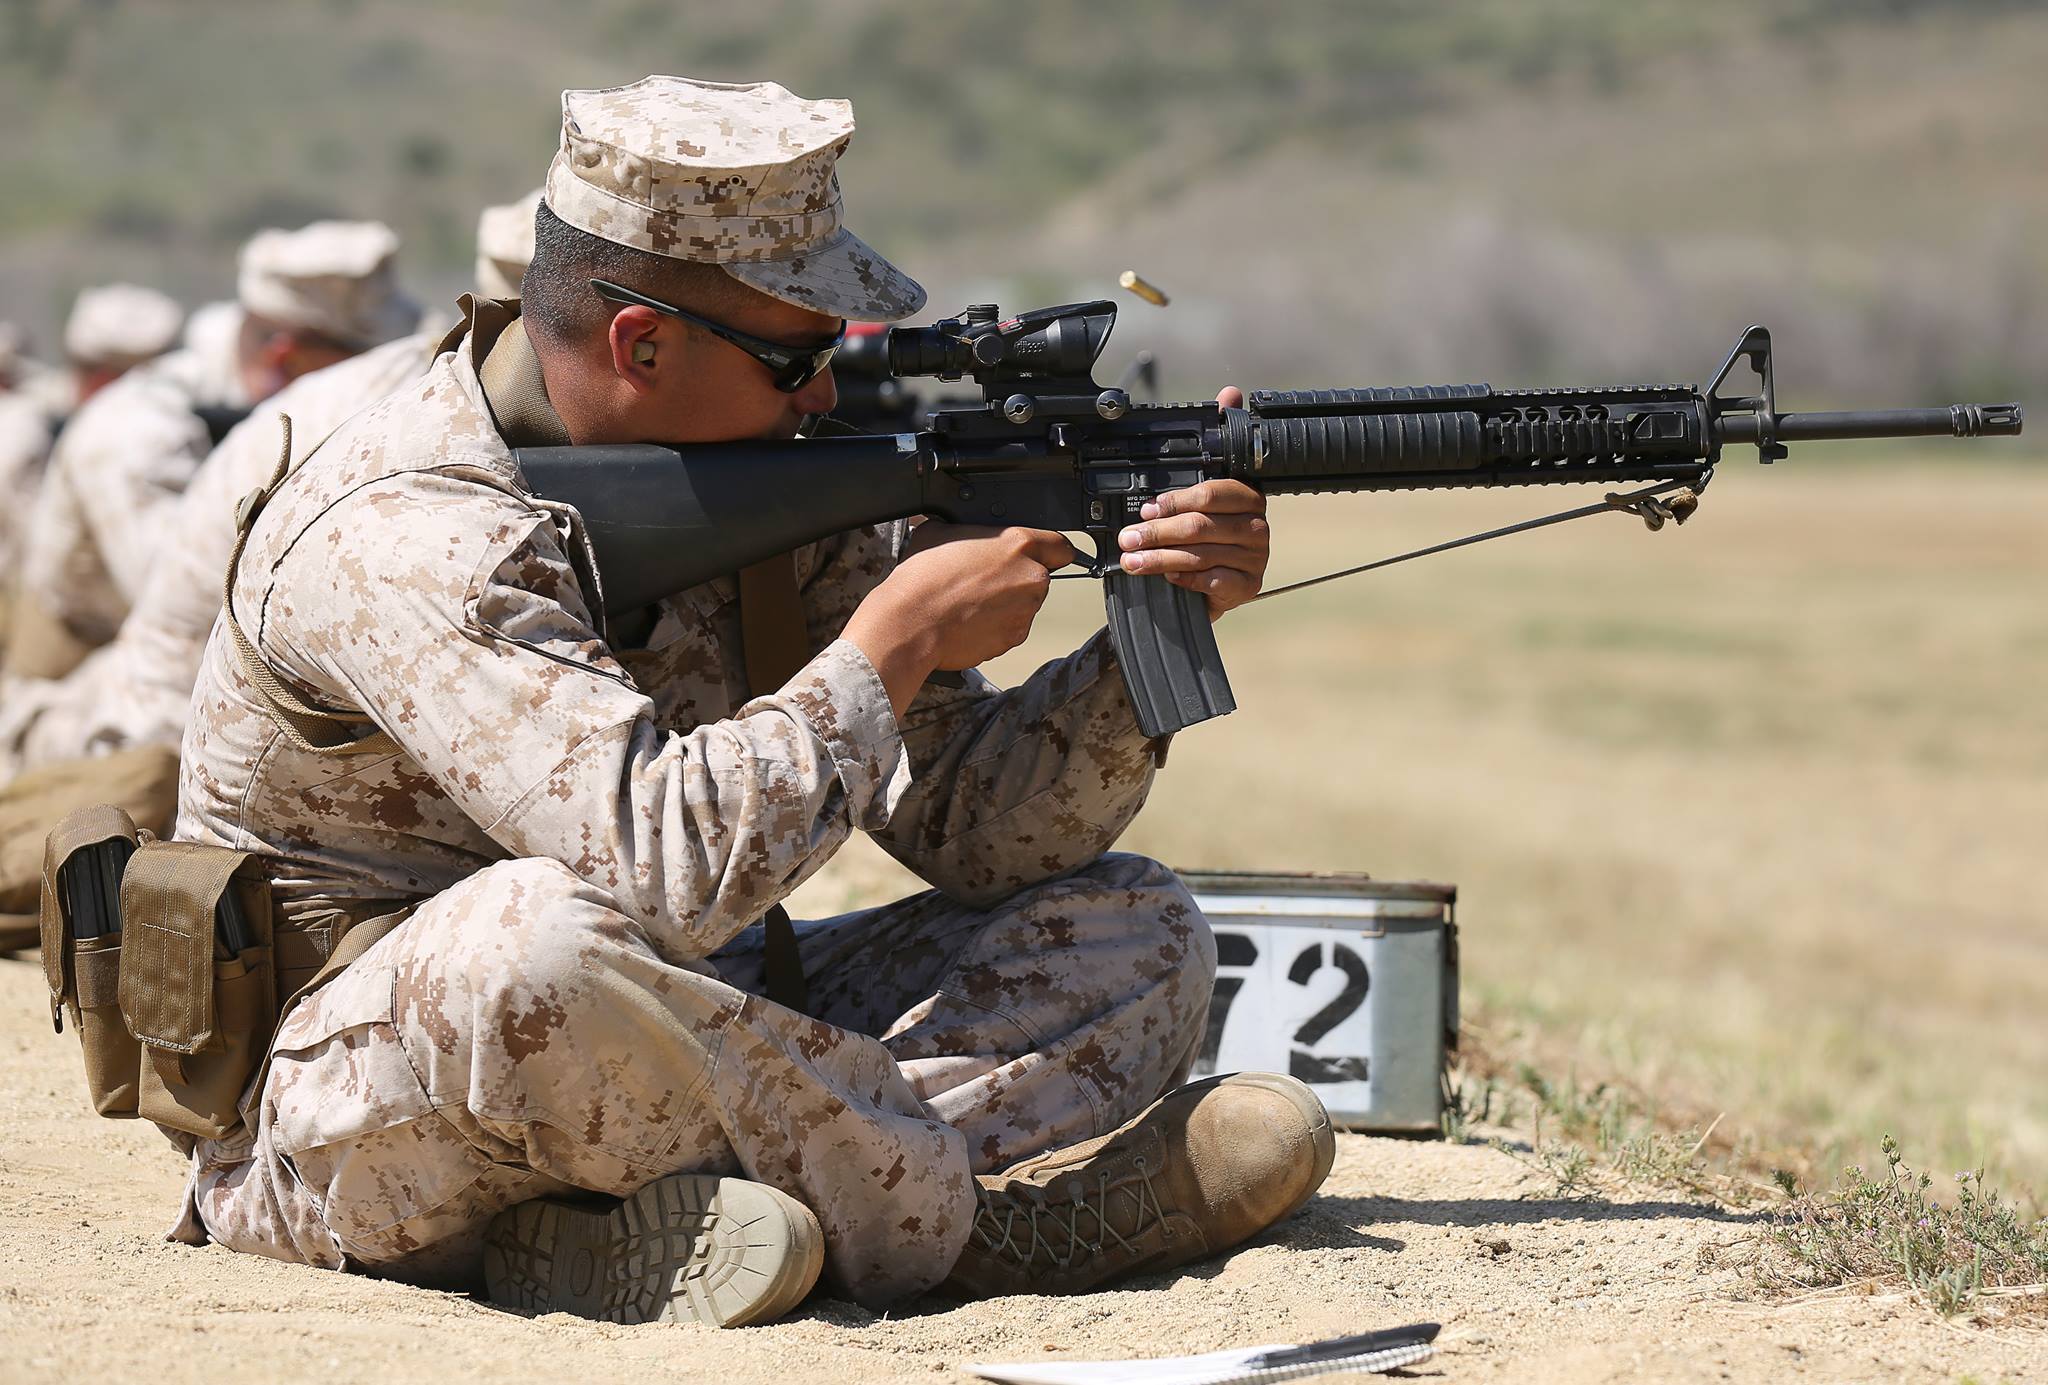 Usmc Rifle Range